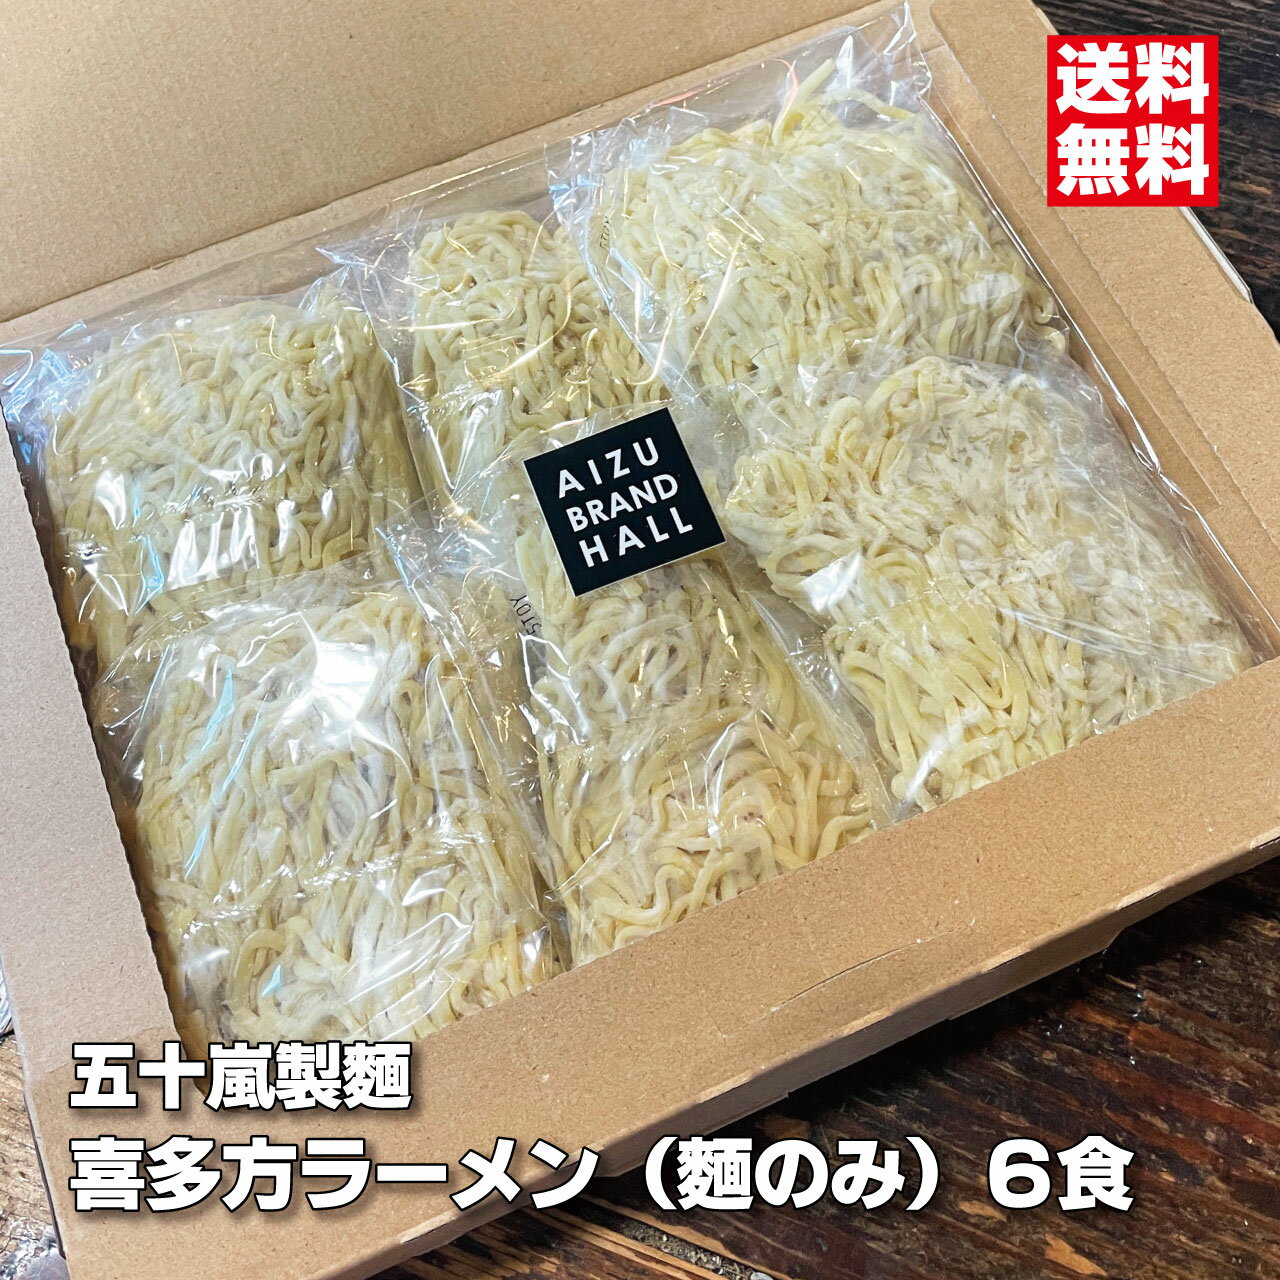 喜多方ラーメン 麺のみ 140g ×6食 多加水麺 中太麺 